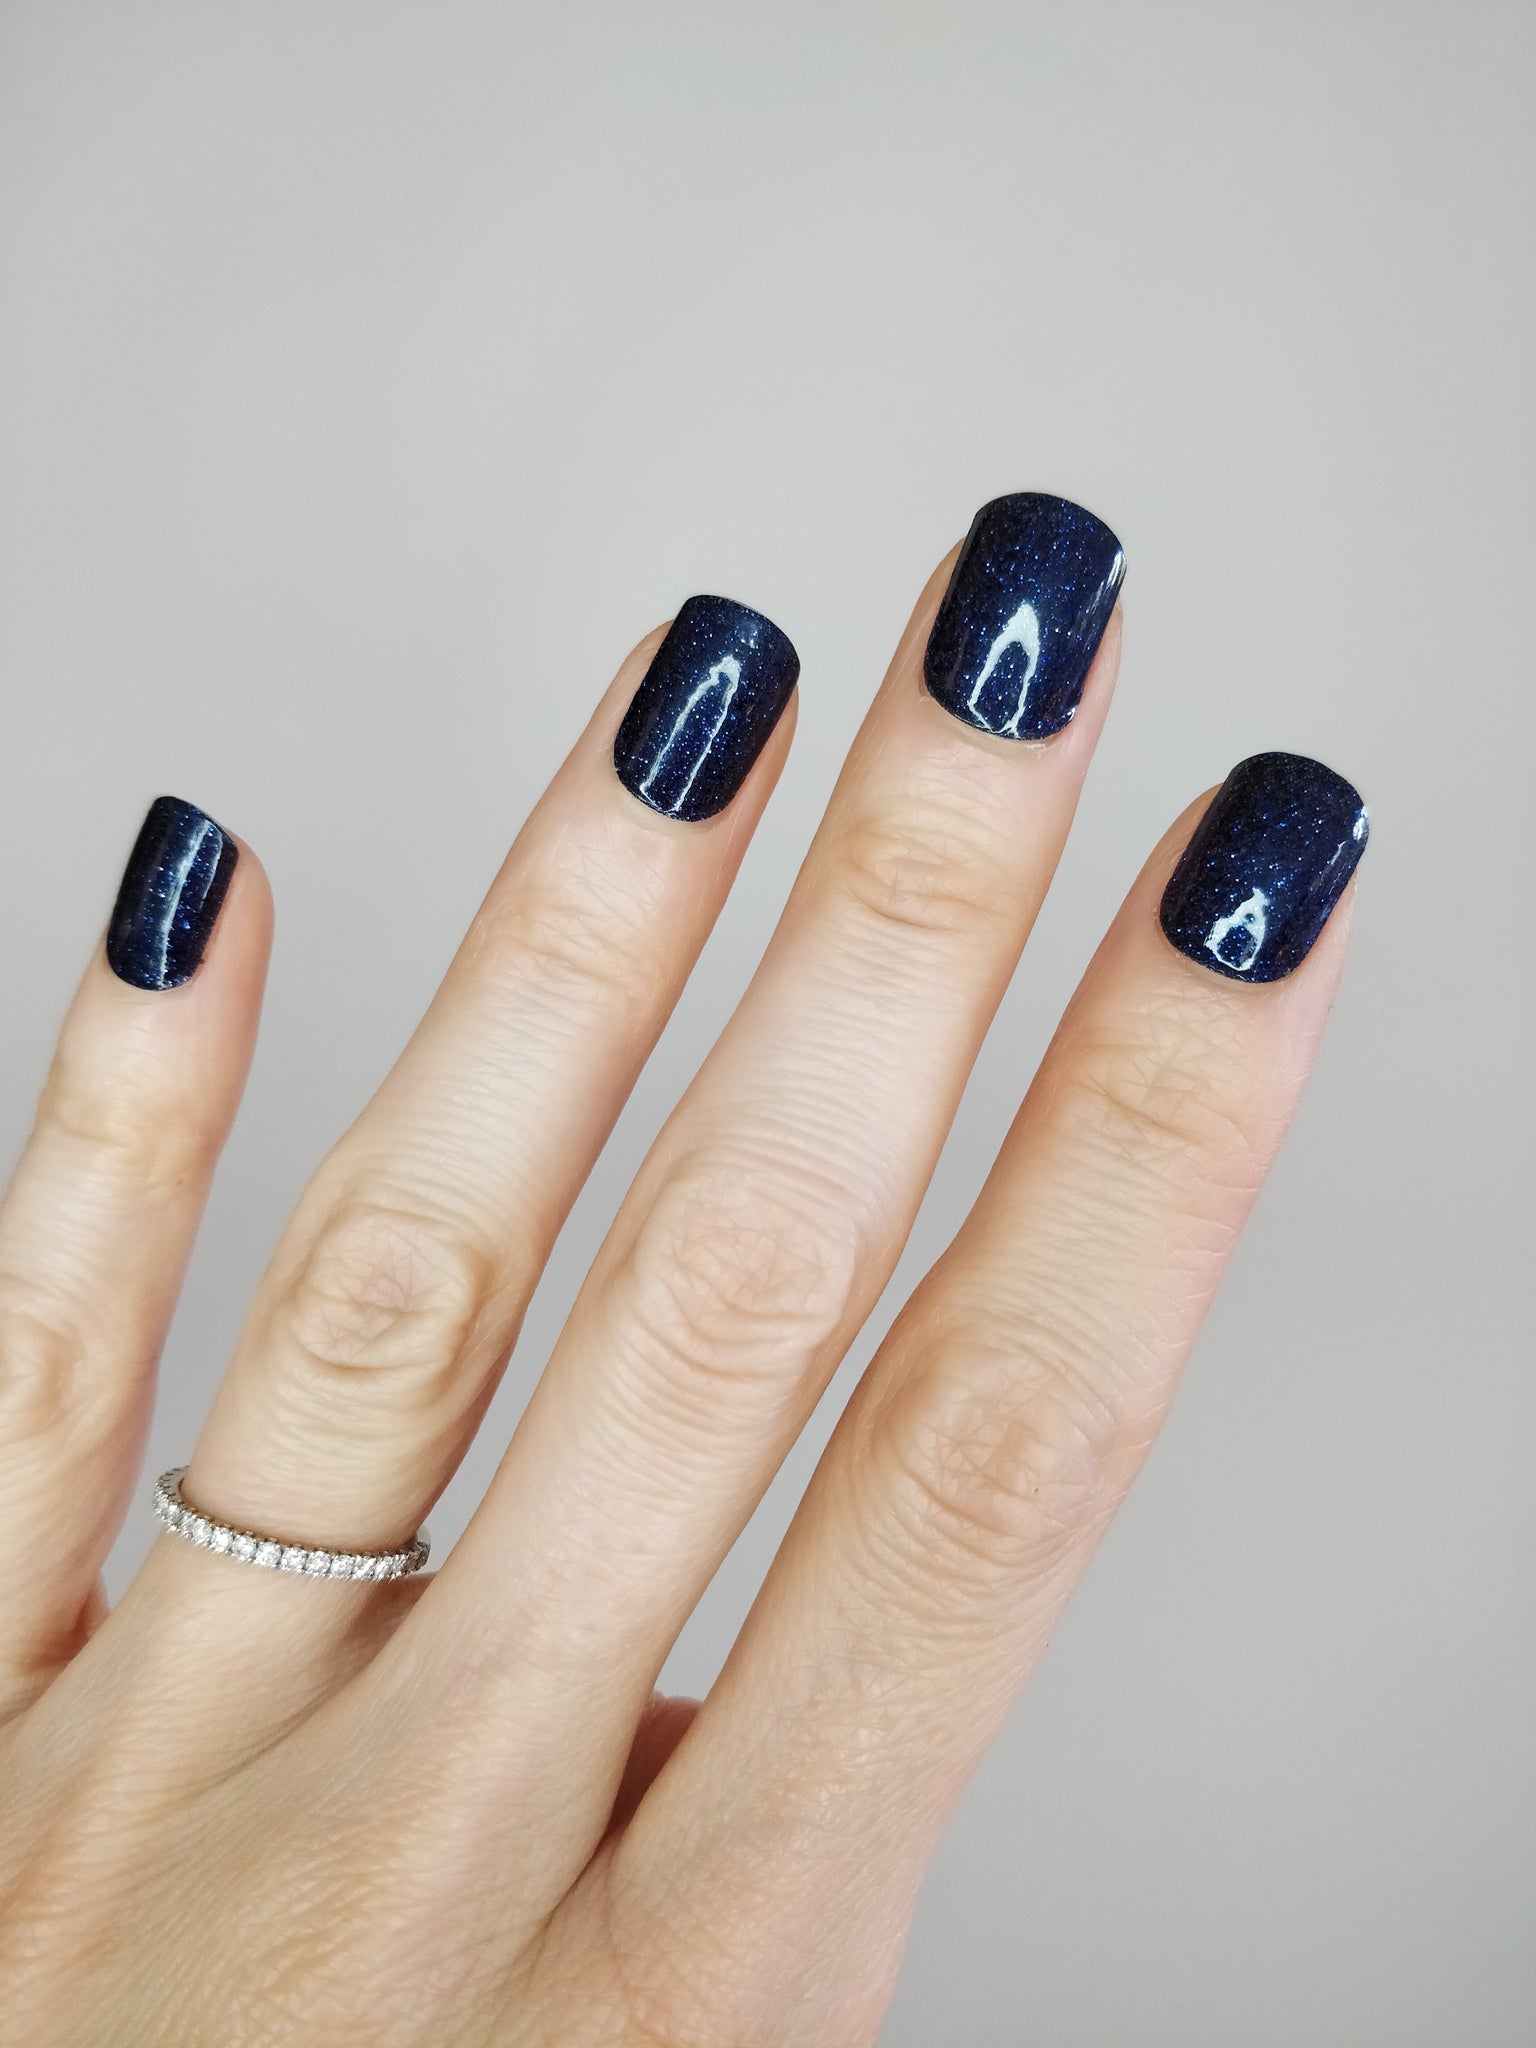 Blue glitters for NYE 🎉 Using @cxpolish (PR): 🥶 Subzero ⭐️ Fallen Stars  #almondnails #glitternails #nailpolishaddict #trendingnails… | Instagram